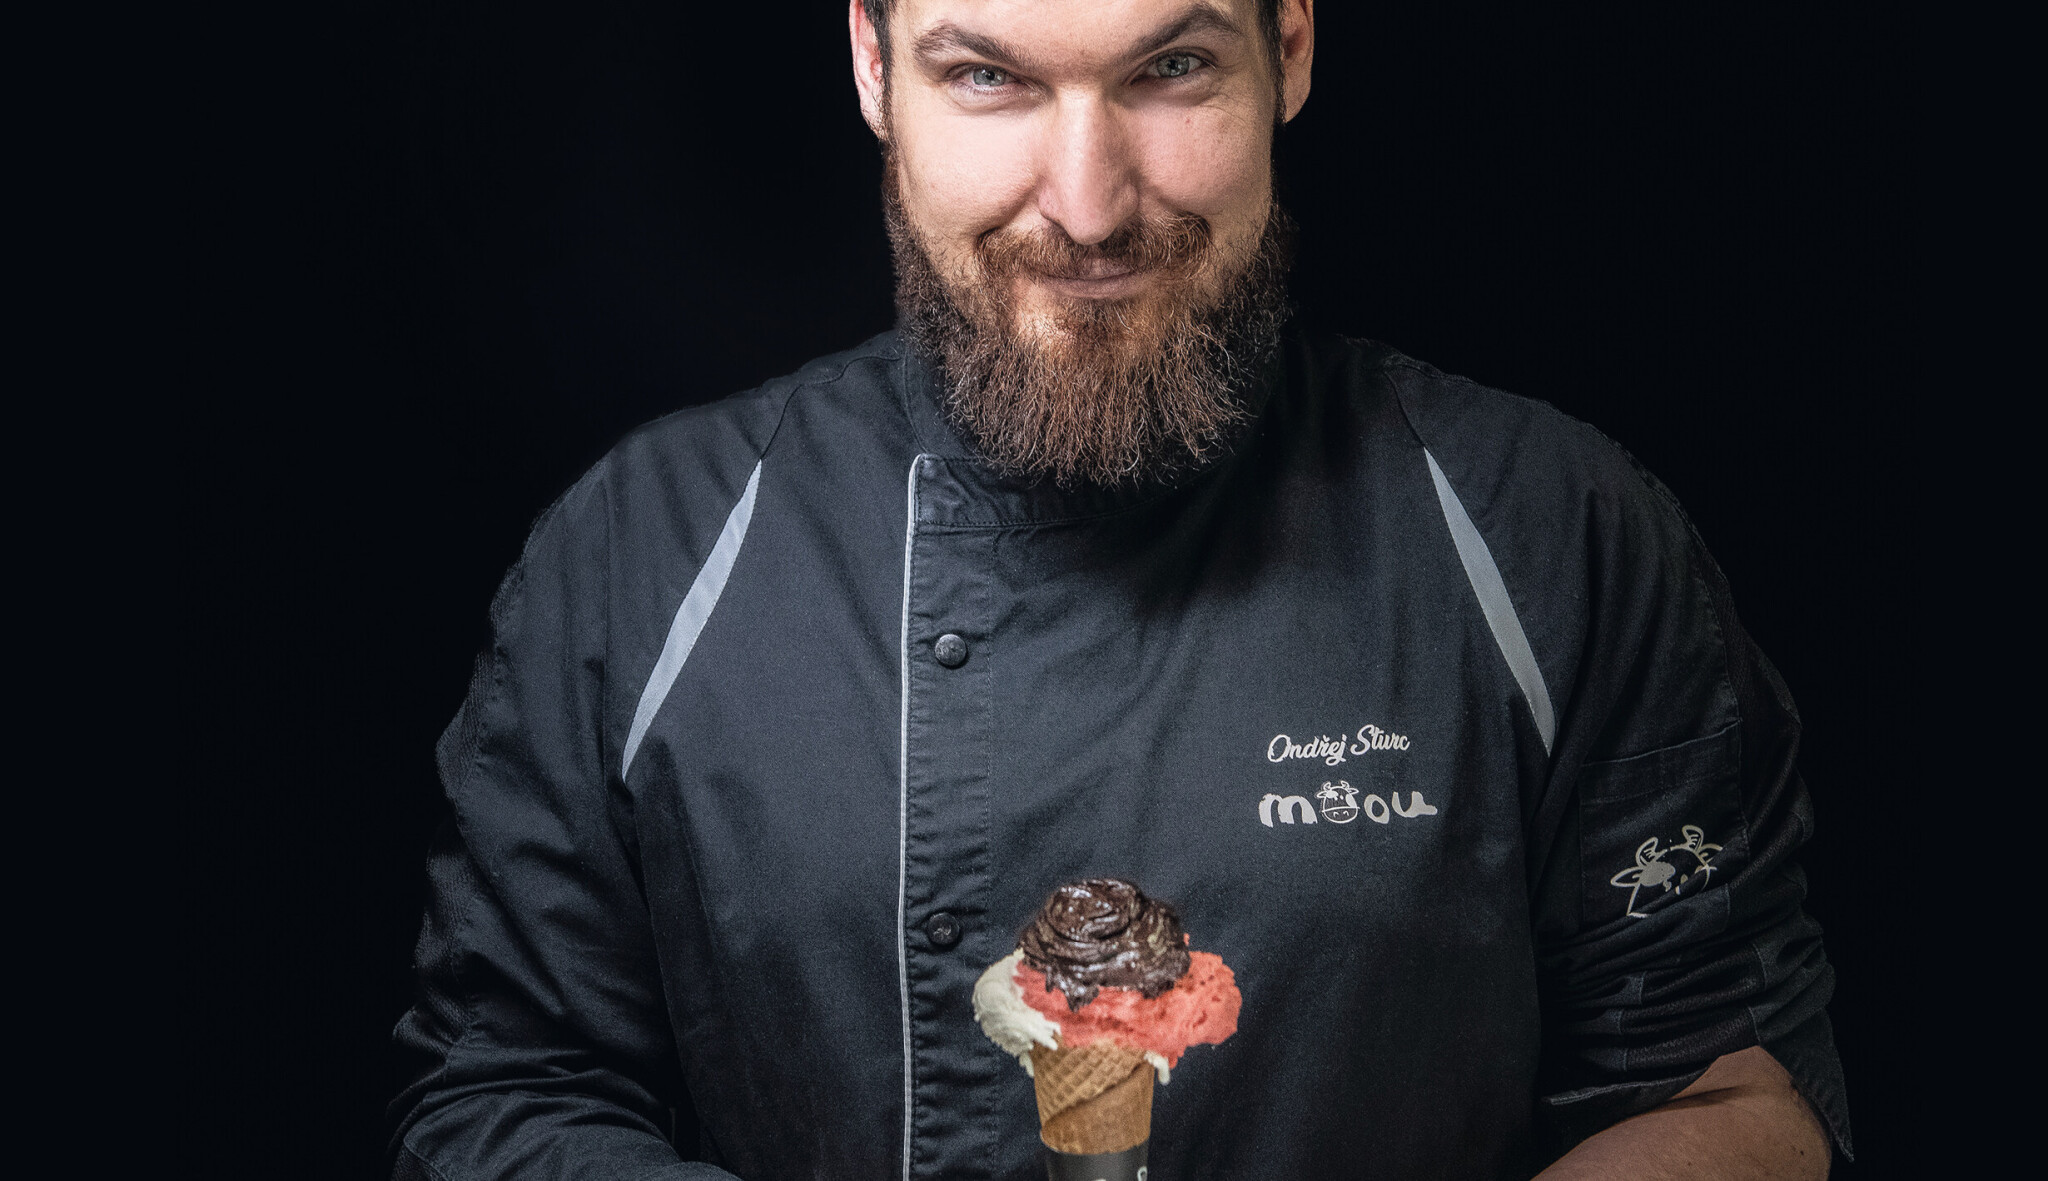 Pan gelato. Ondřej z Česka v Turíně dělá zmrzlinu, která učarovala Italům